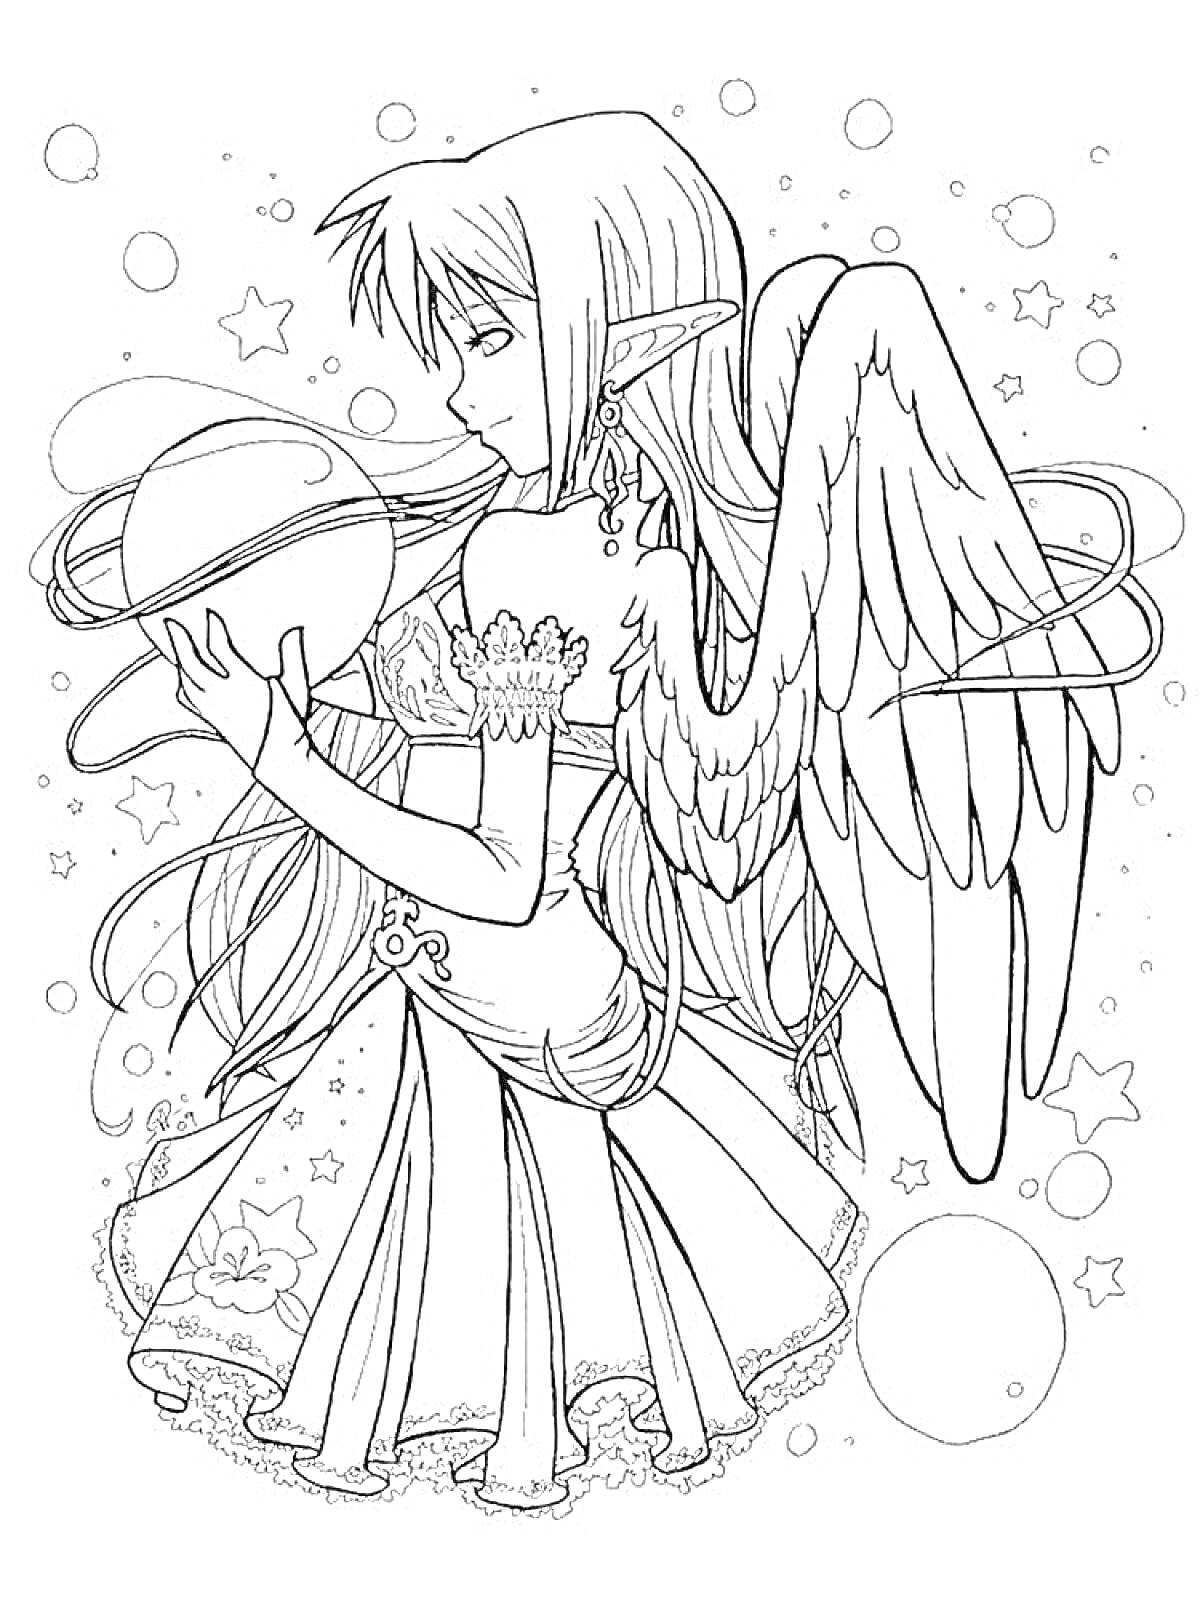 Раскраска Аниме-ангел с длинными волосами, стоящий в окружении звезд и пузырей, держащий сферу кольцами